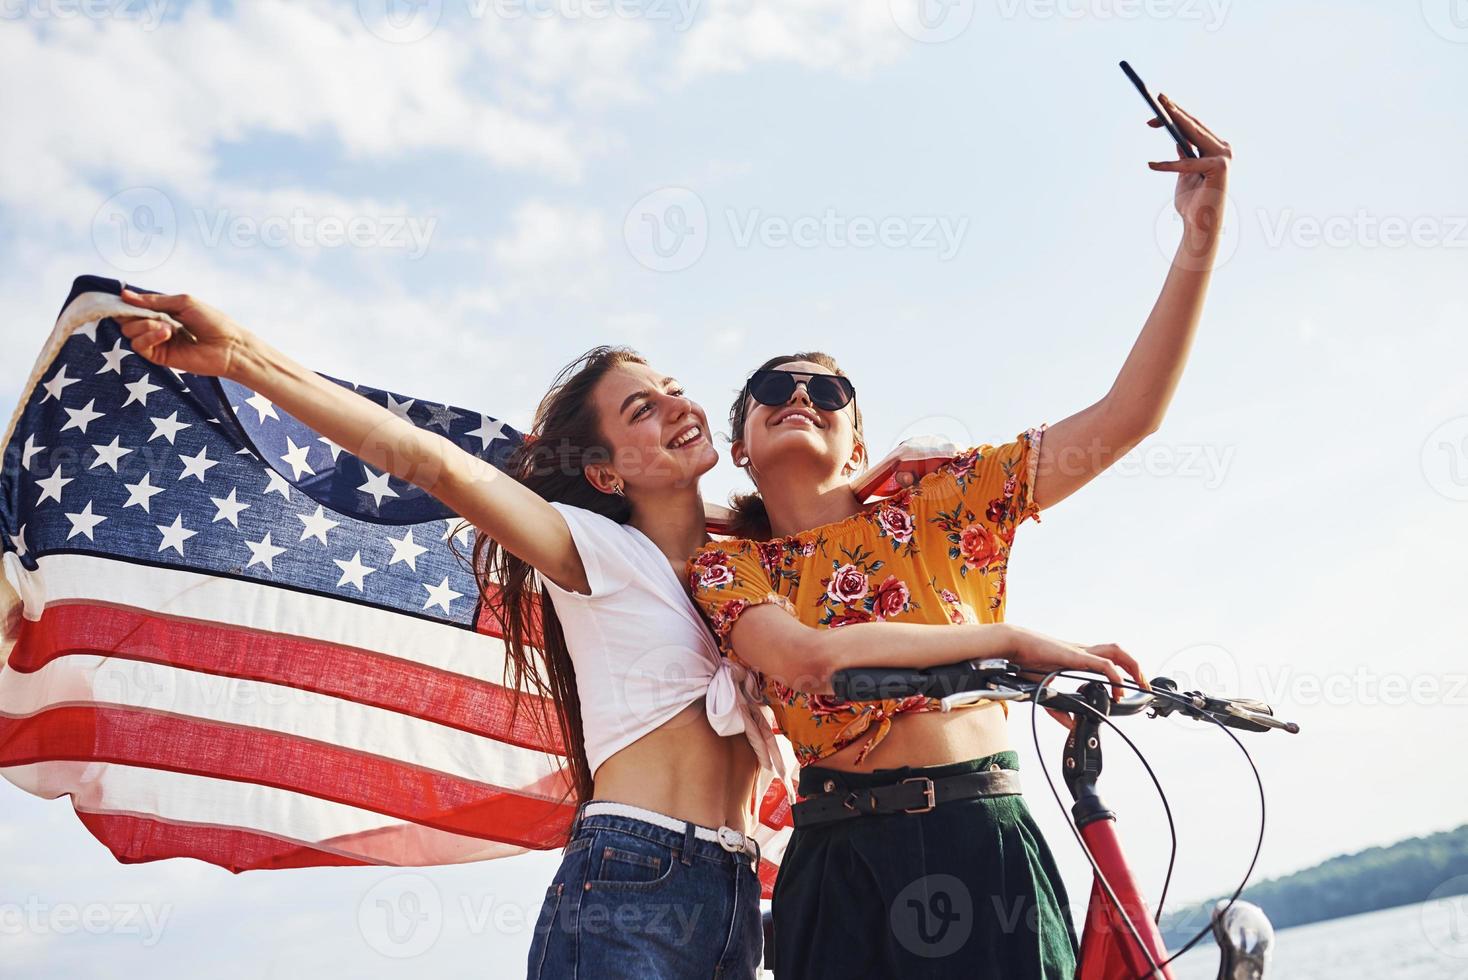 dos mujeres alegres patrióticas con bicicleta y bandera de estados unidos en las manos hacen selfie foto